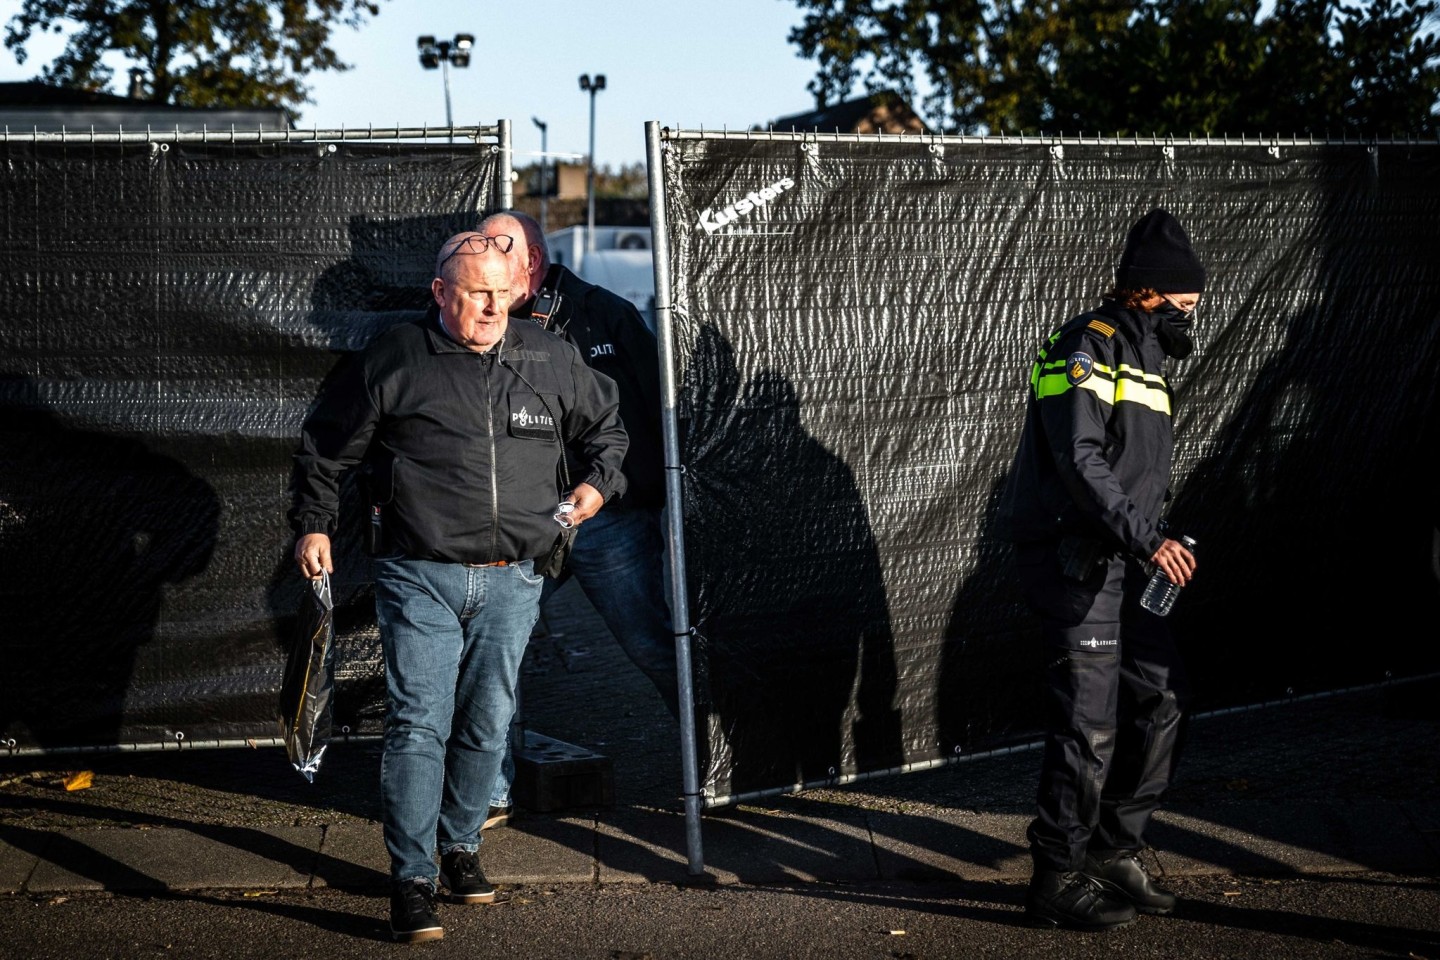 Polizisten nach dem Ausheben einer international operierenden Drpgenbande im niederländischen Bergeijk.